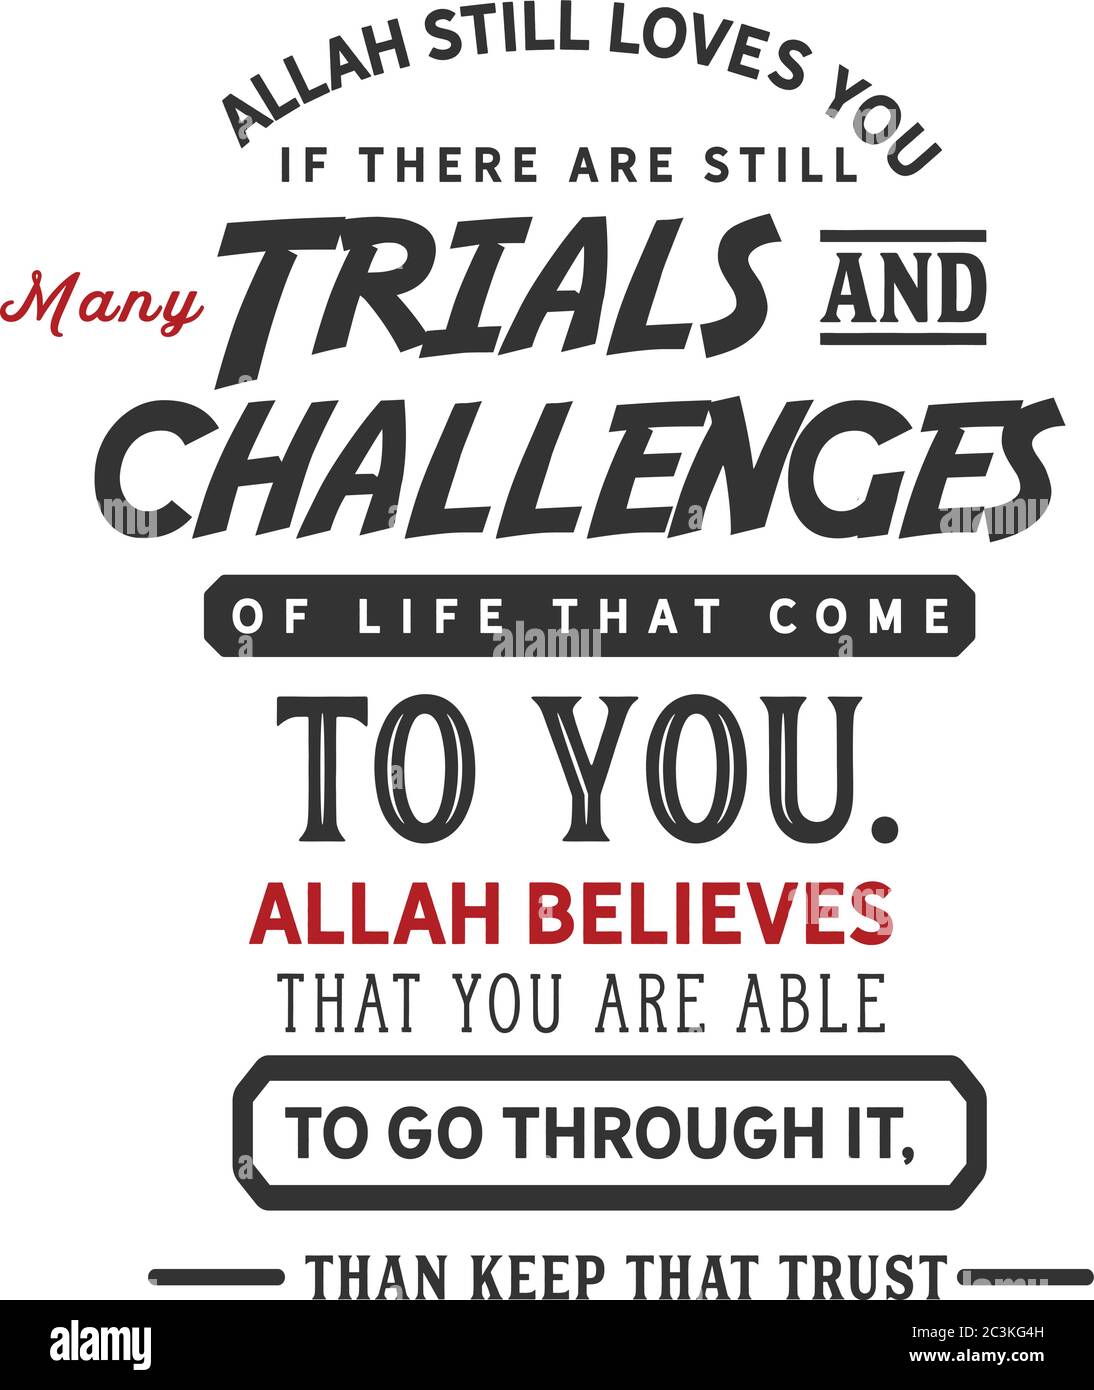 Allah liebt euch immer noch, wenn es noch viele Prüfungen und Herausforderungen des Lebens gibt, die zu euch kommen. Allah glaubt, dass ihr dann durch sie gehen könnt Stock Vektor